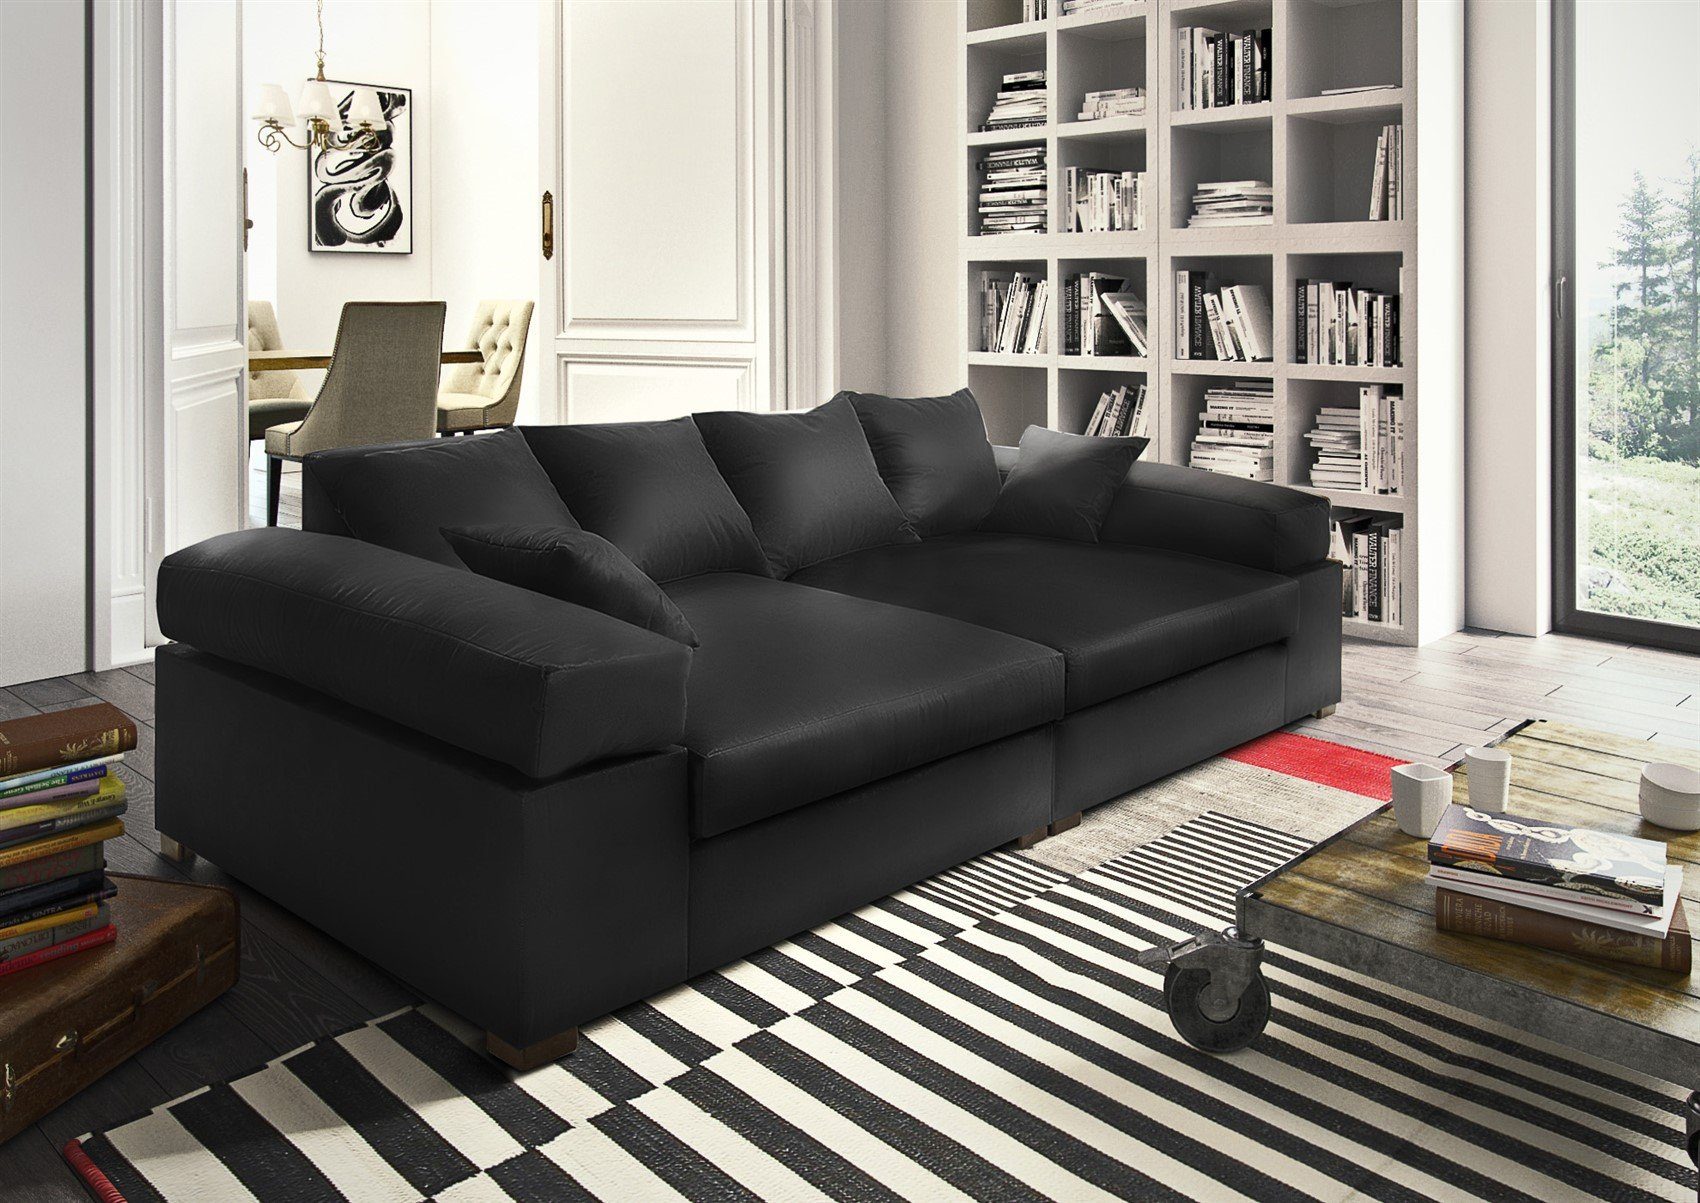 Fun Möbel Big-Sofa Teile, unter der Neue AREZZO, Zierkissen Couchgarnitur Big Riesensofa 1 Stoffe inkl. Artikelnummer: Sofa S0V8R0K8OM1P2 Megasofa